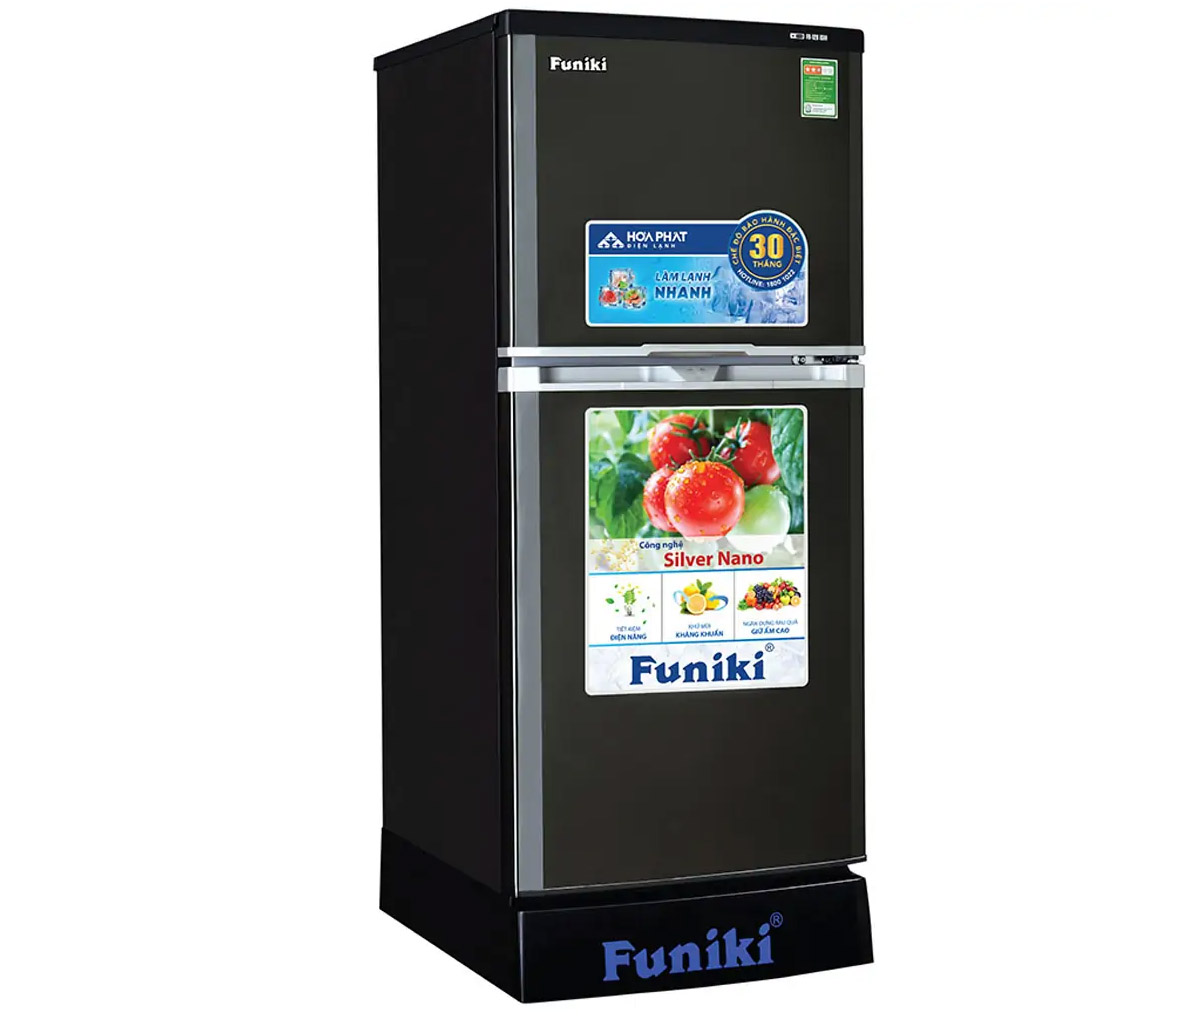 Tủ Lạnh Funiki 159 Lít FR-166ISU có kích thước lý tưởng